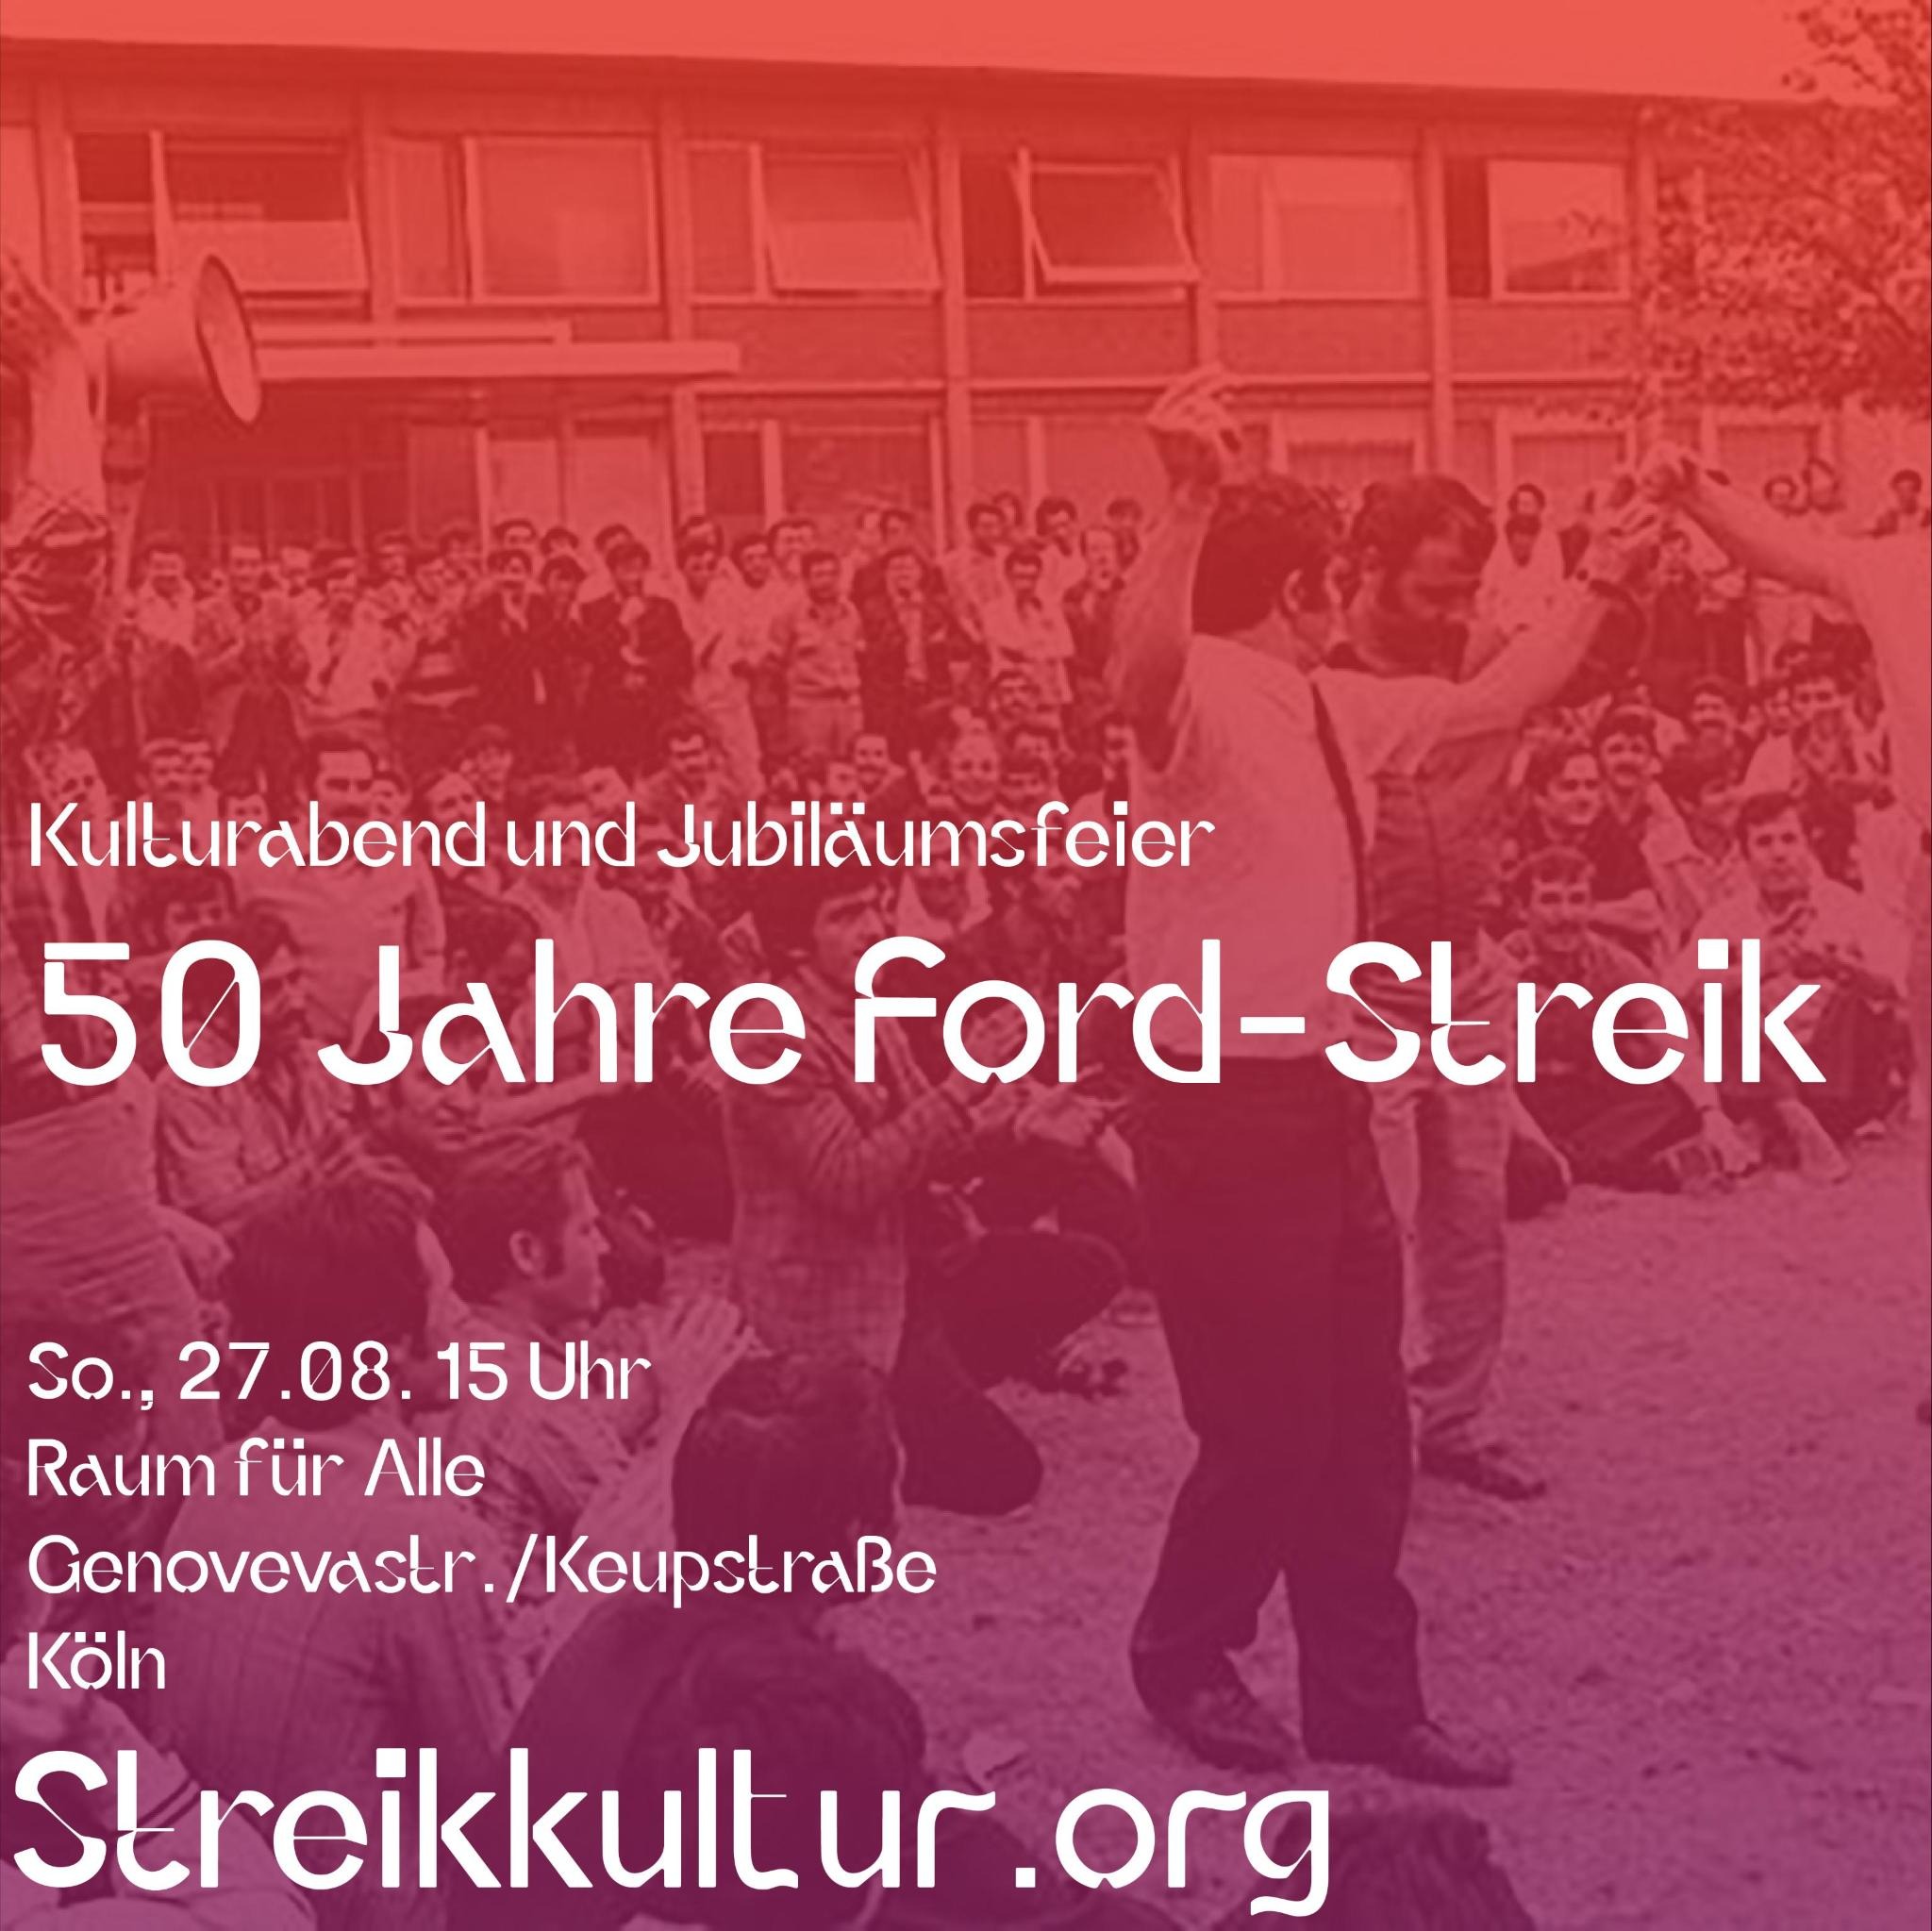 27.08. 15 Uhr / Kulturabend und Jubiläumsfeier 50 Jahre Ford-Streik / Raum für Alle